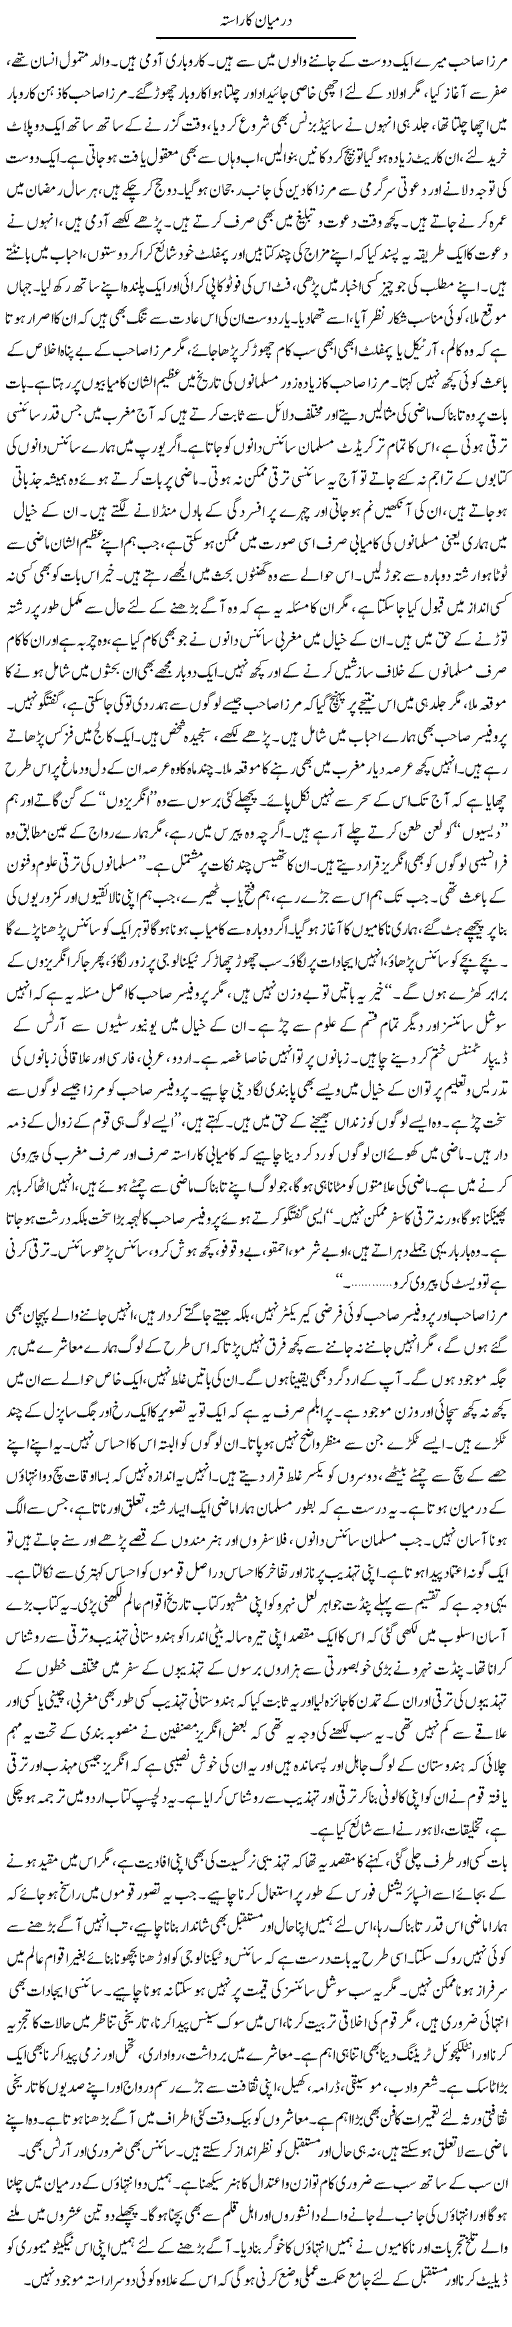 Muslim History Express Column Amir Khakwani 5 September 2011